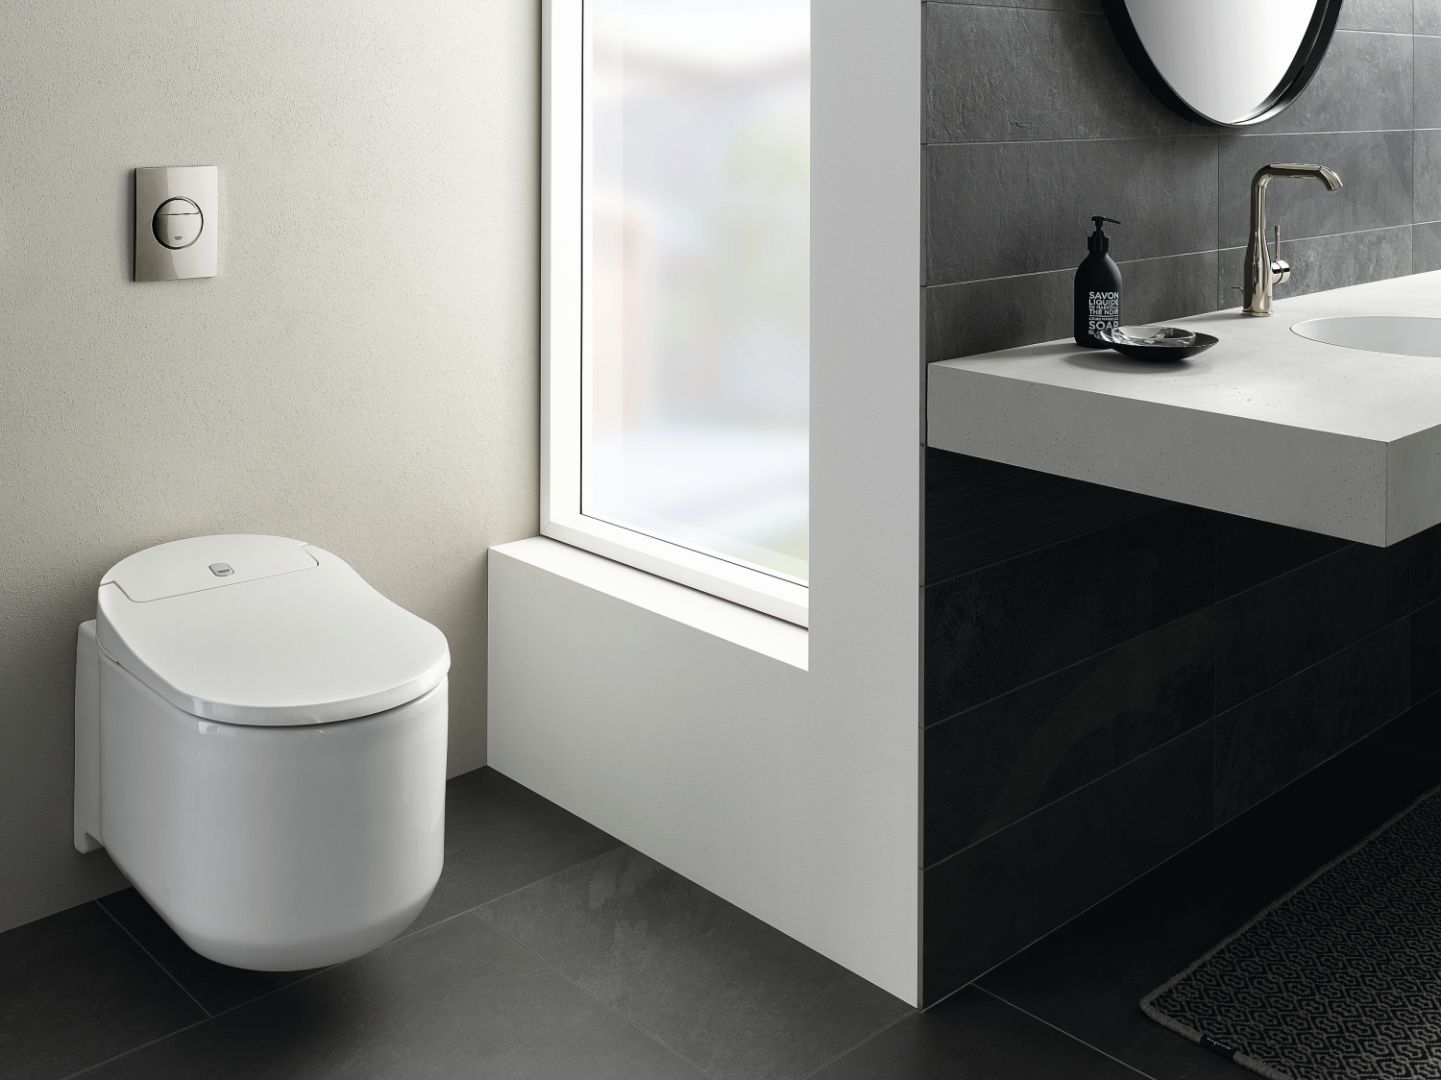 Toaleta myjąca Grohe Sensia Arena z innowacyjnymi funkcjami, takimi jak Skinclean oraz Hygieneclean, podświetlenie nocne, automatyczne podnoszenie deski. Fot. Grohe